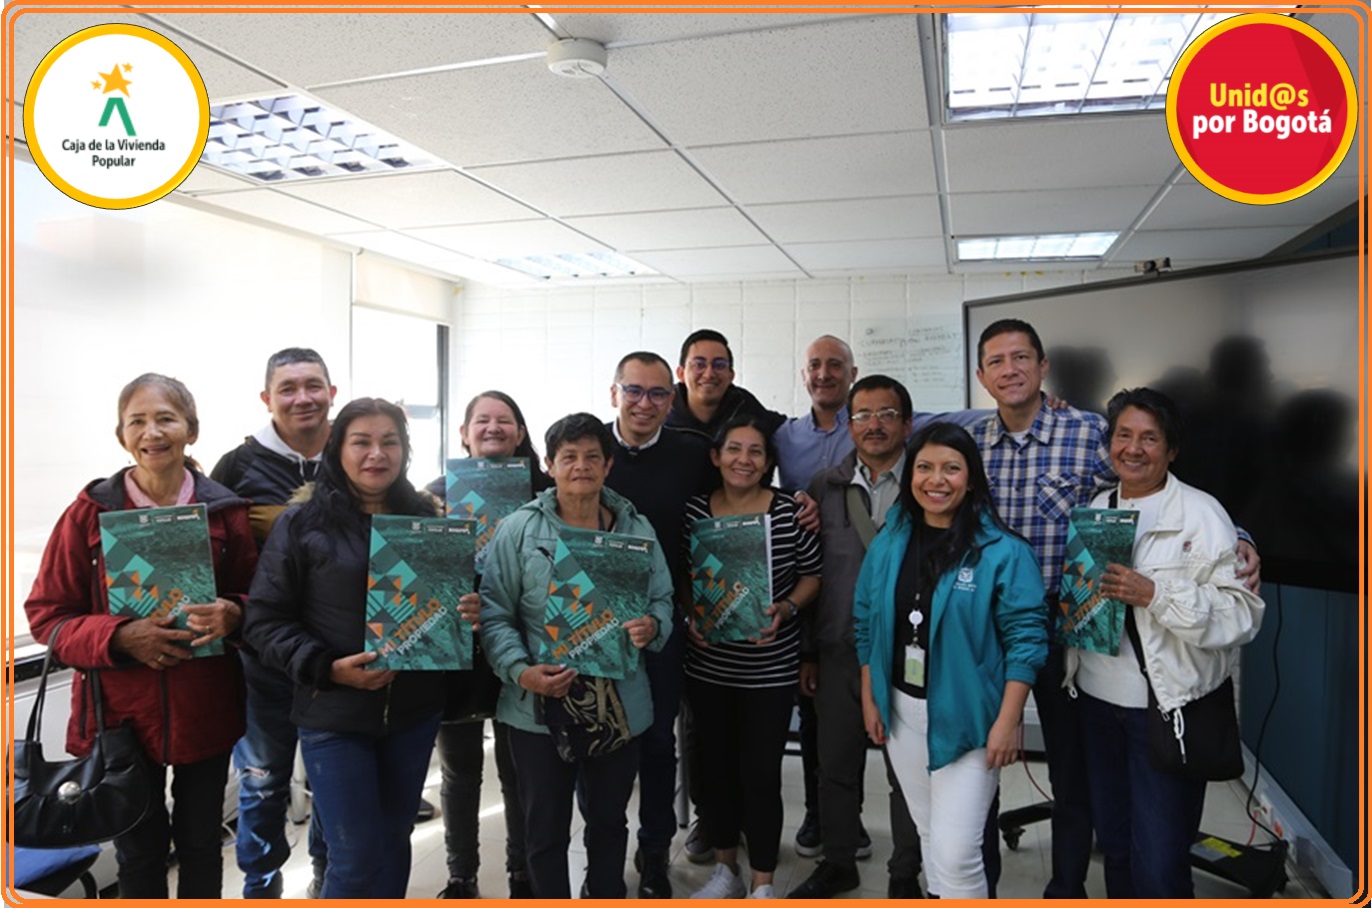 En los últimos cuatro años, la Caja de la Vivienda Popular ha registrado y entregado a familias de estratos 1 y 2 de Bogotá 3.096 títulos de propiedad.